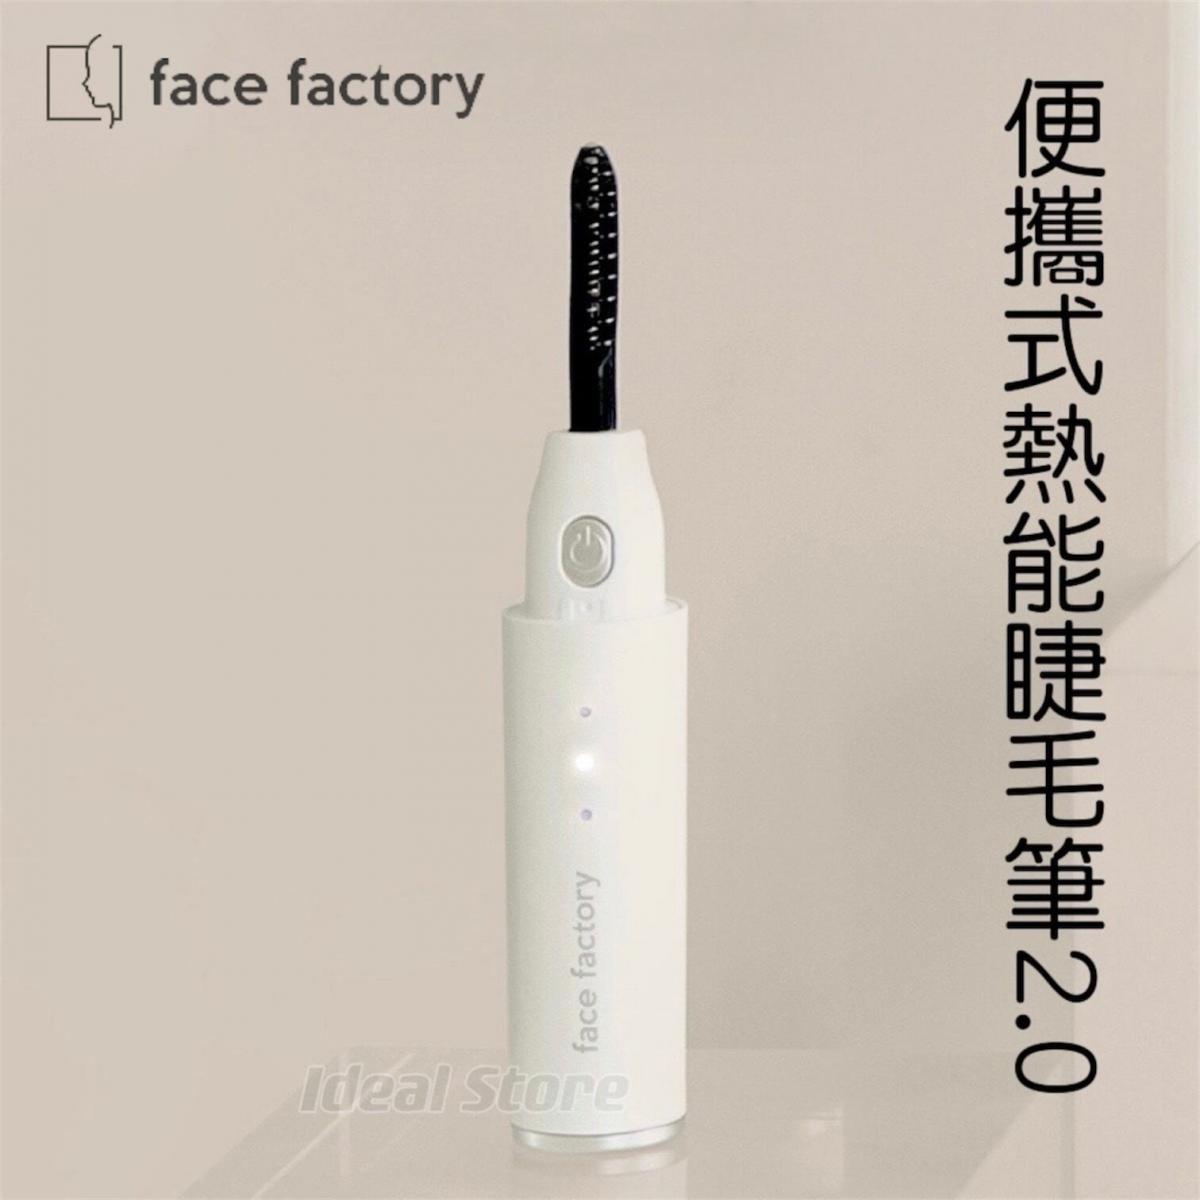 Face Factory - 便攜式熱能睫毛筆 2.0｜第二代｜電睫毛機｜燙睫毛器